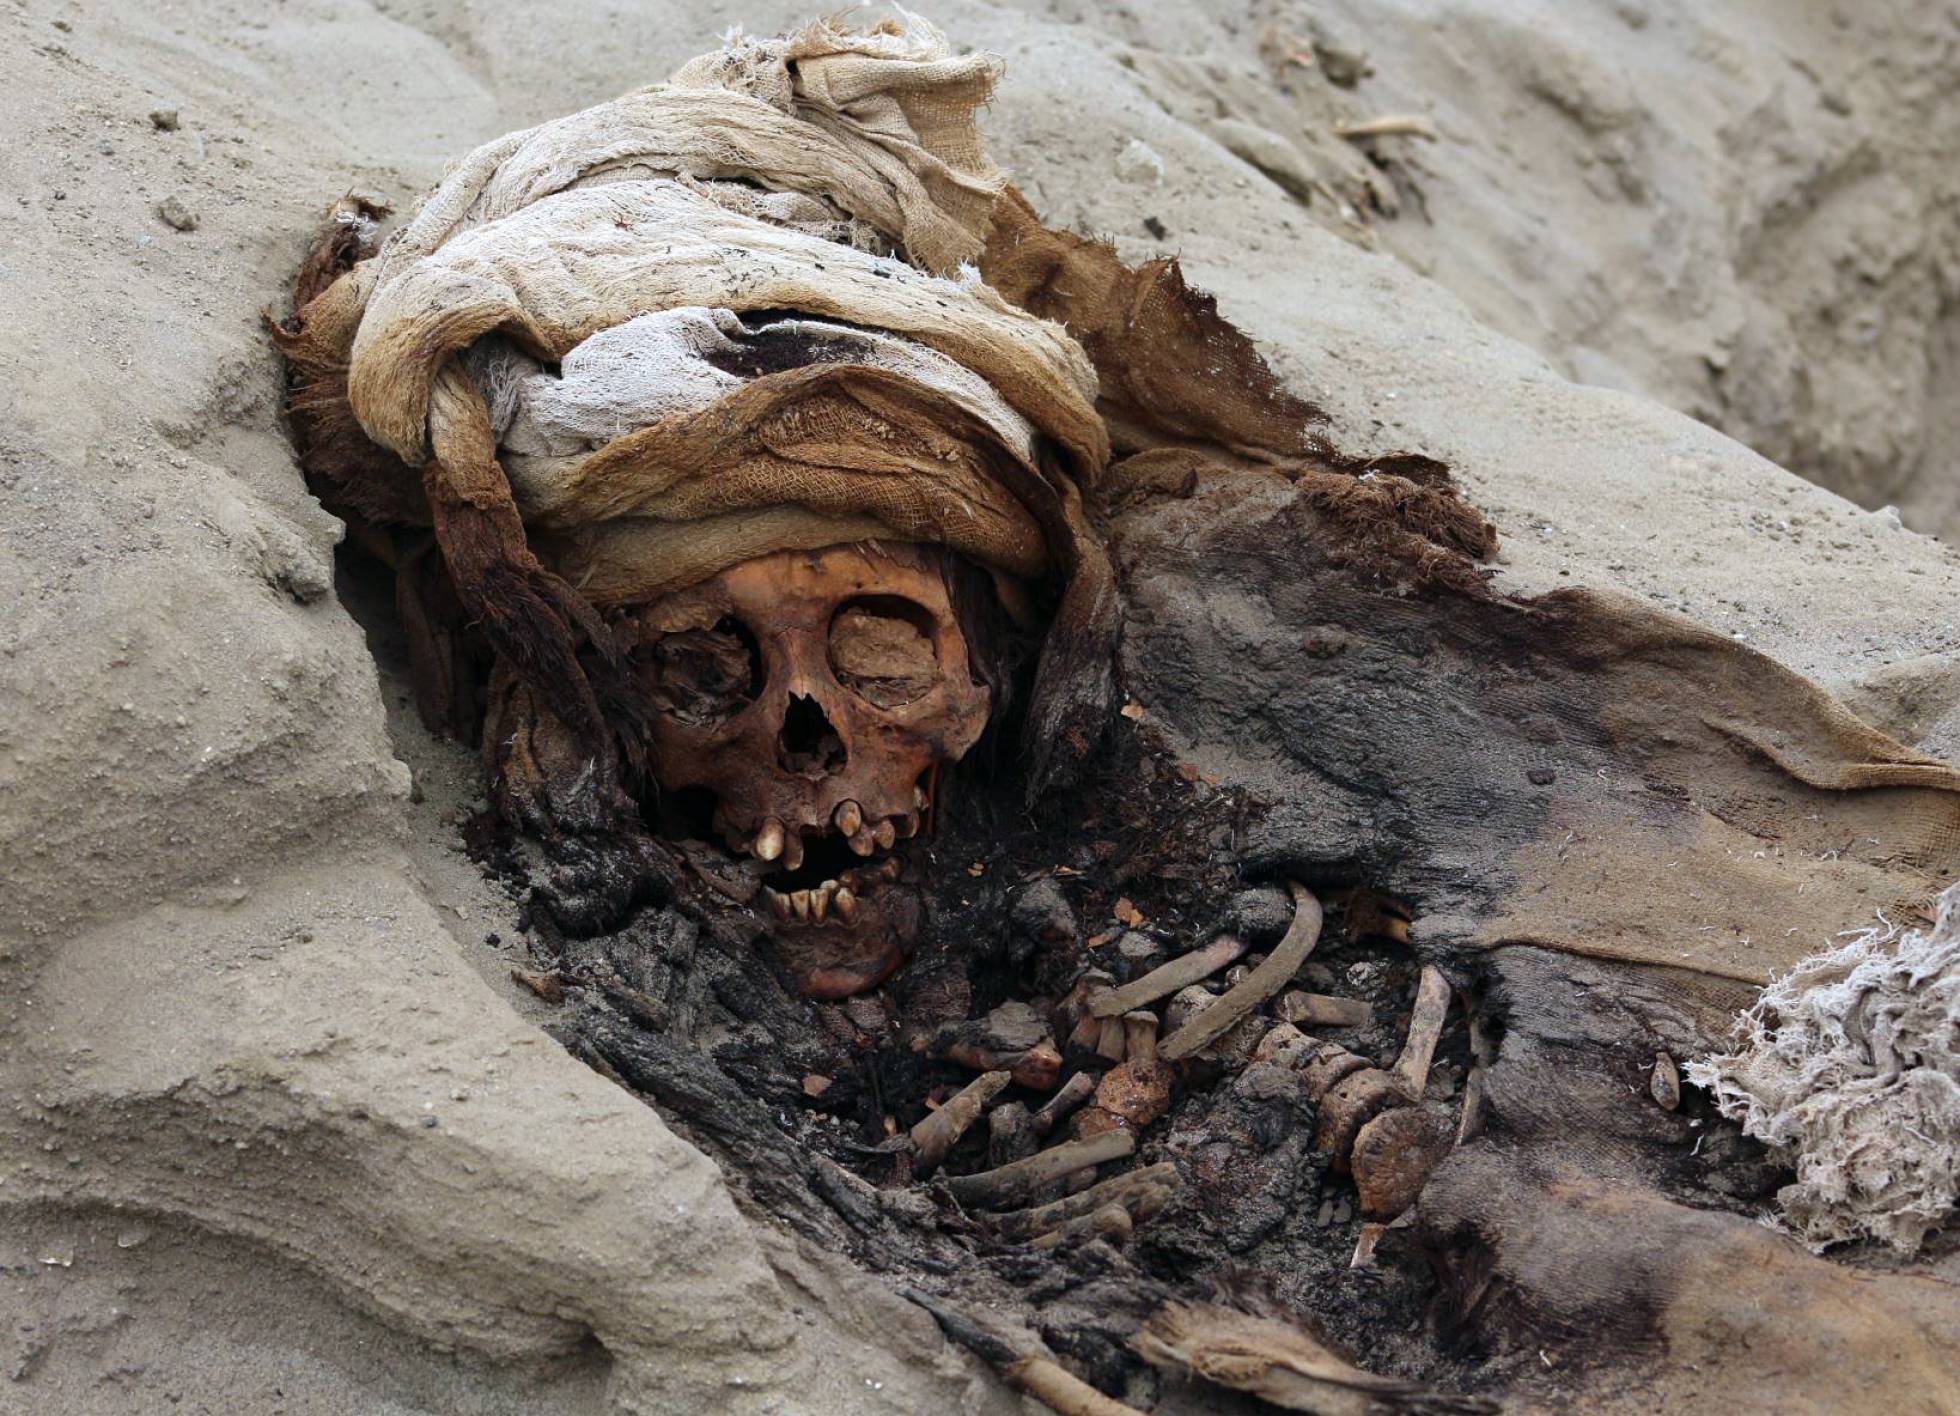 Hallan en Perú el mayor sacrificio ritual de niños jamás descubierto